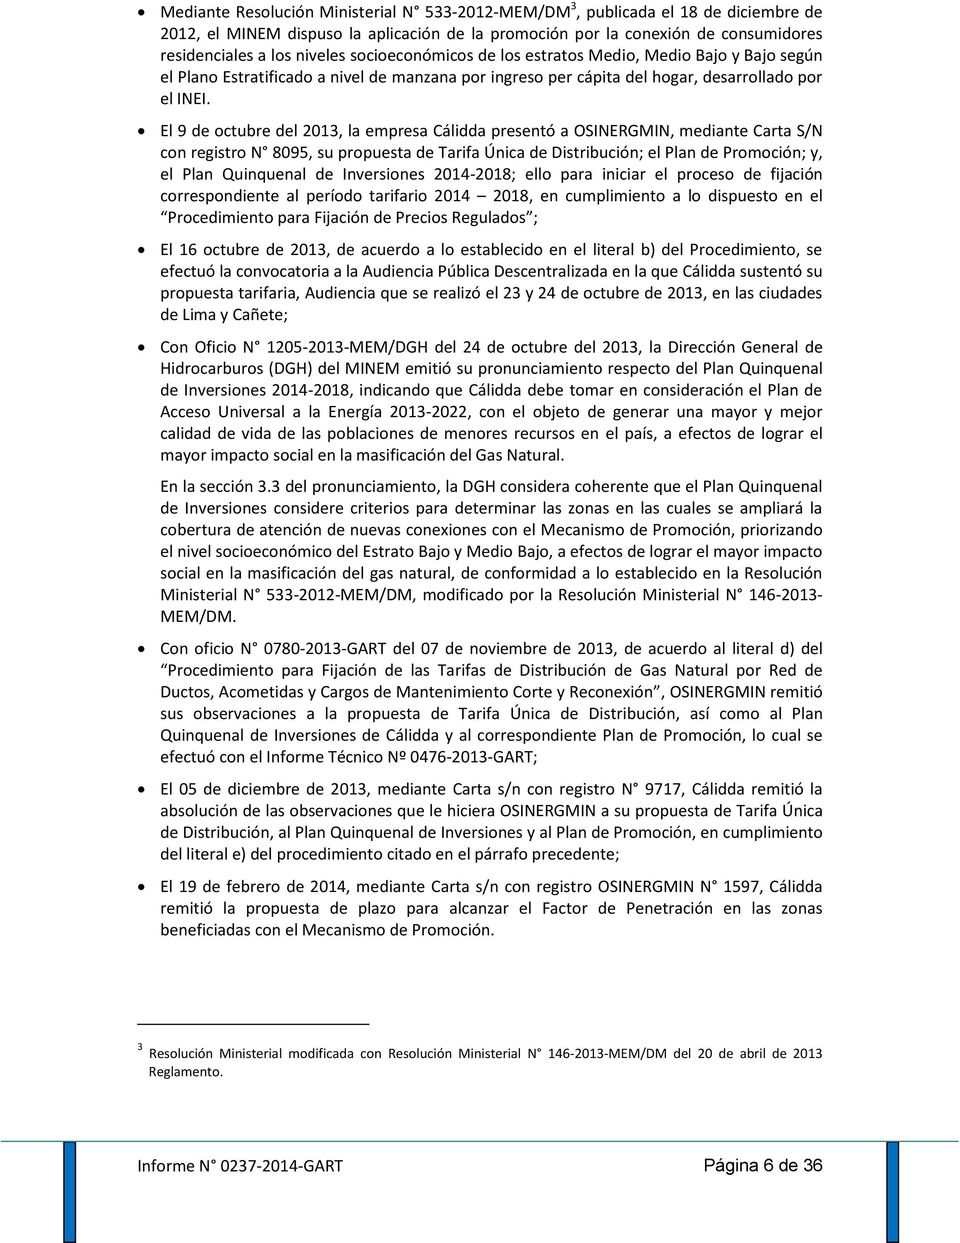 El 9 de octubre del 2013, la empresa Cálidda presentó a OSINERGMIN, mediante Carta S/N con registro N 8095, su propuesta de Tarifa Única de Distribución; el Plan de Promoción; y, el Plan Quinquenal